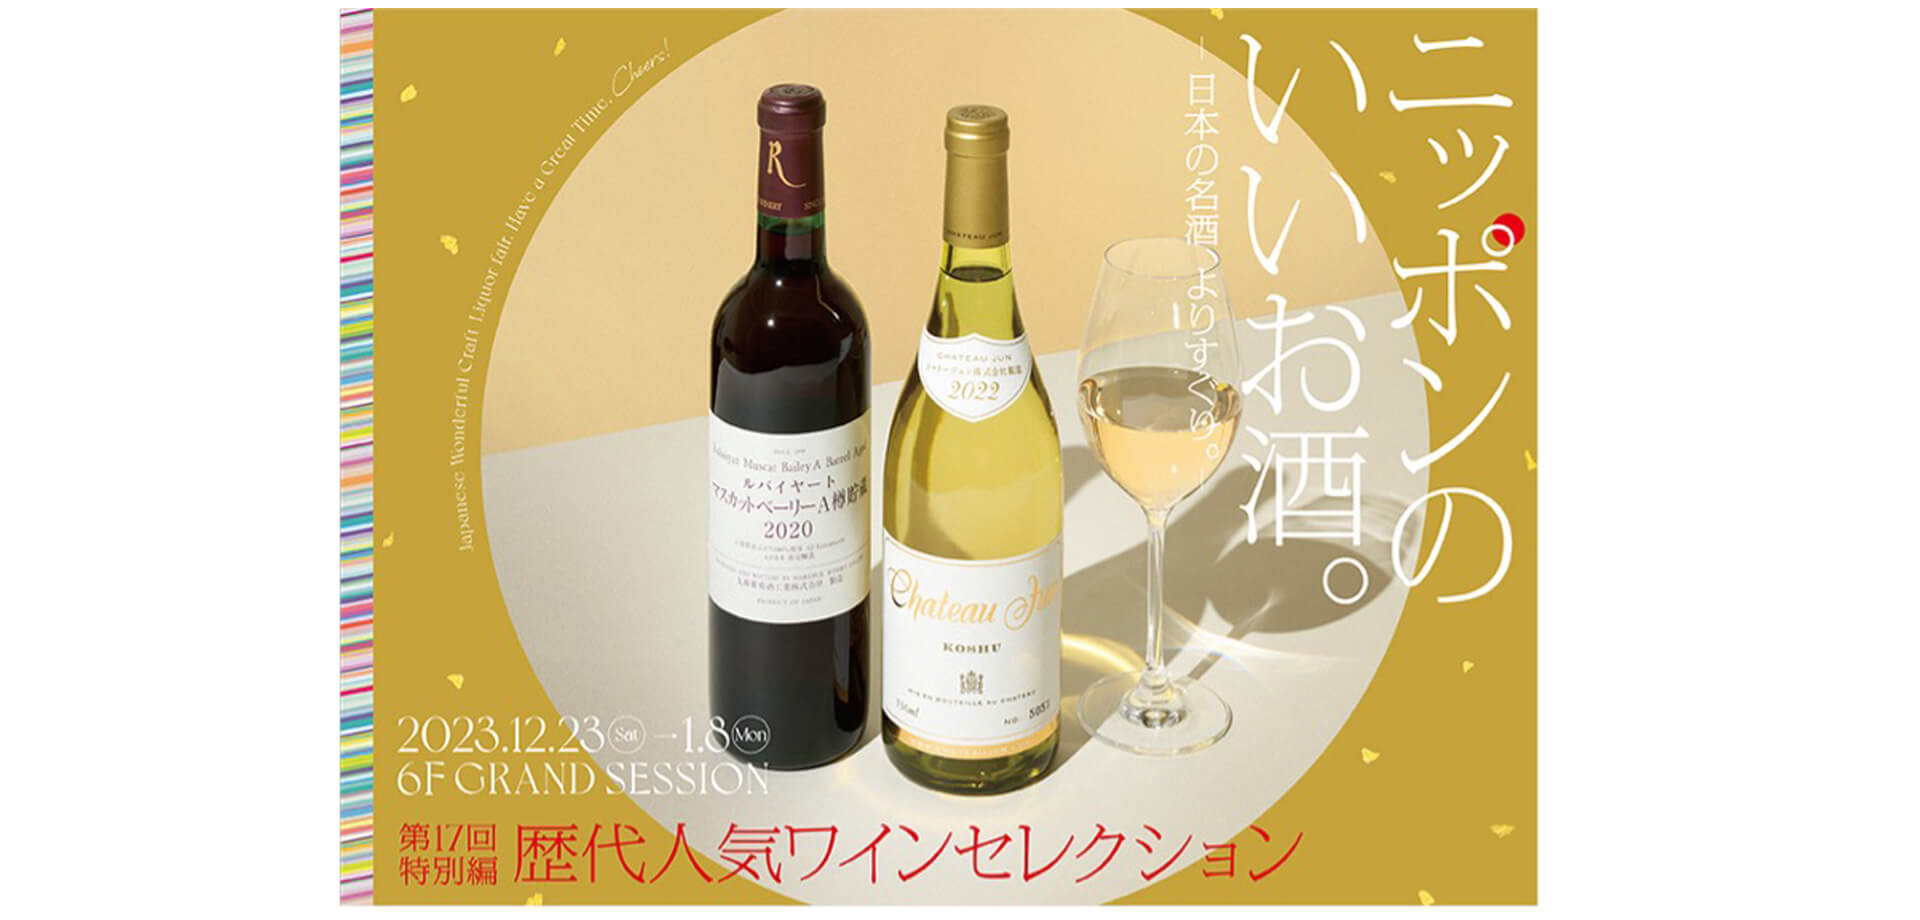 「ニッポンのいいお酒。歴代人気ワインセレクションバナー